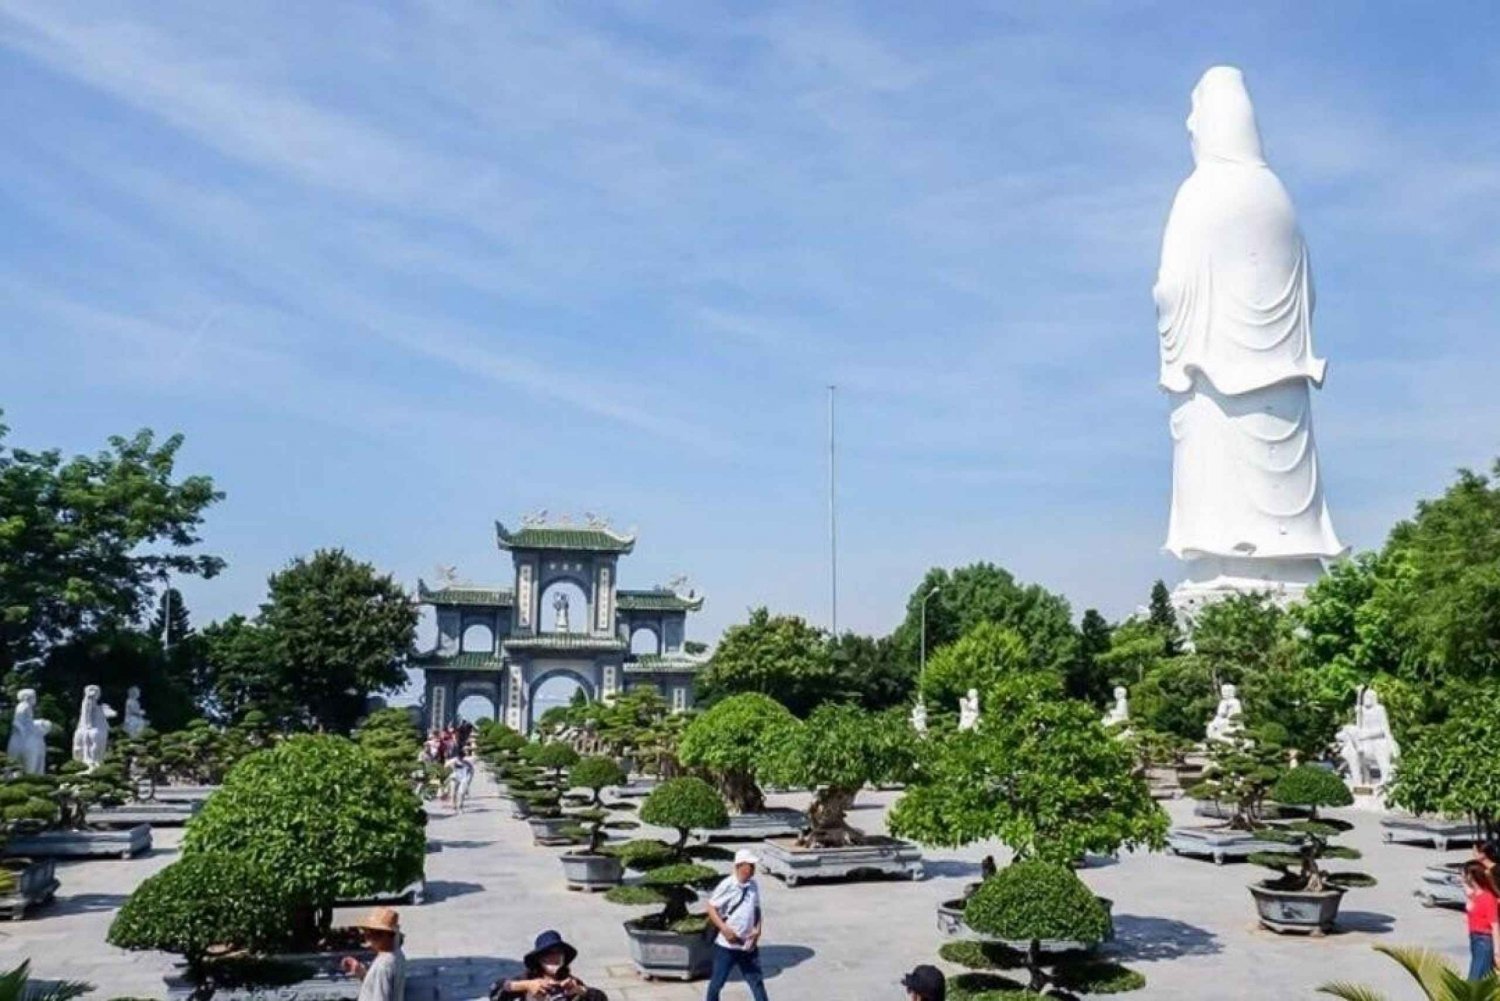 Hoi An : Montagnes de marbre, Bouddha de la Vierge et grotte d'Am Phu